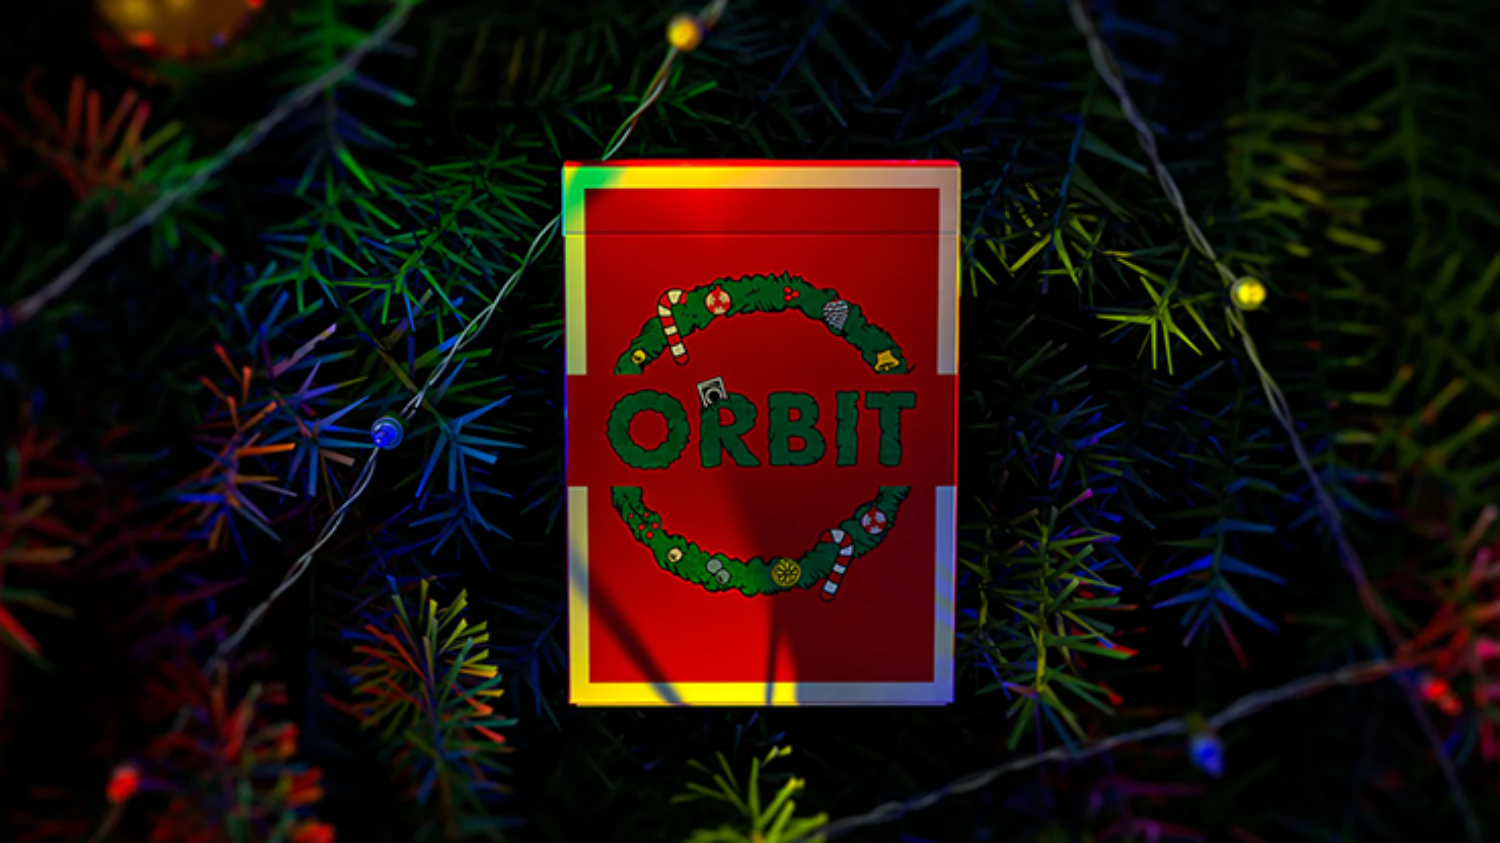 한정판 오빗크리스마스 V2(Orbit Christmas V2 Playing Cards)